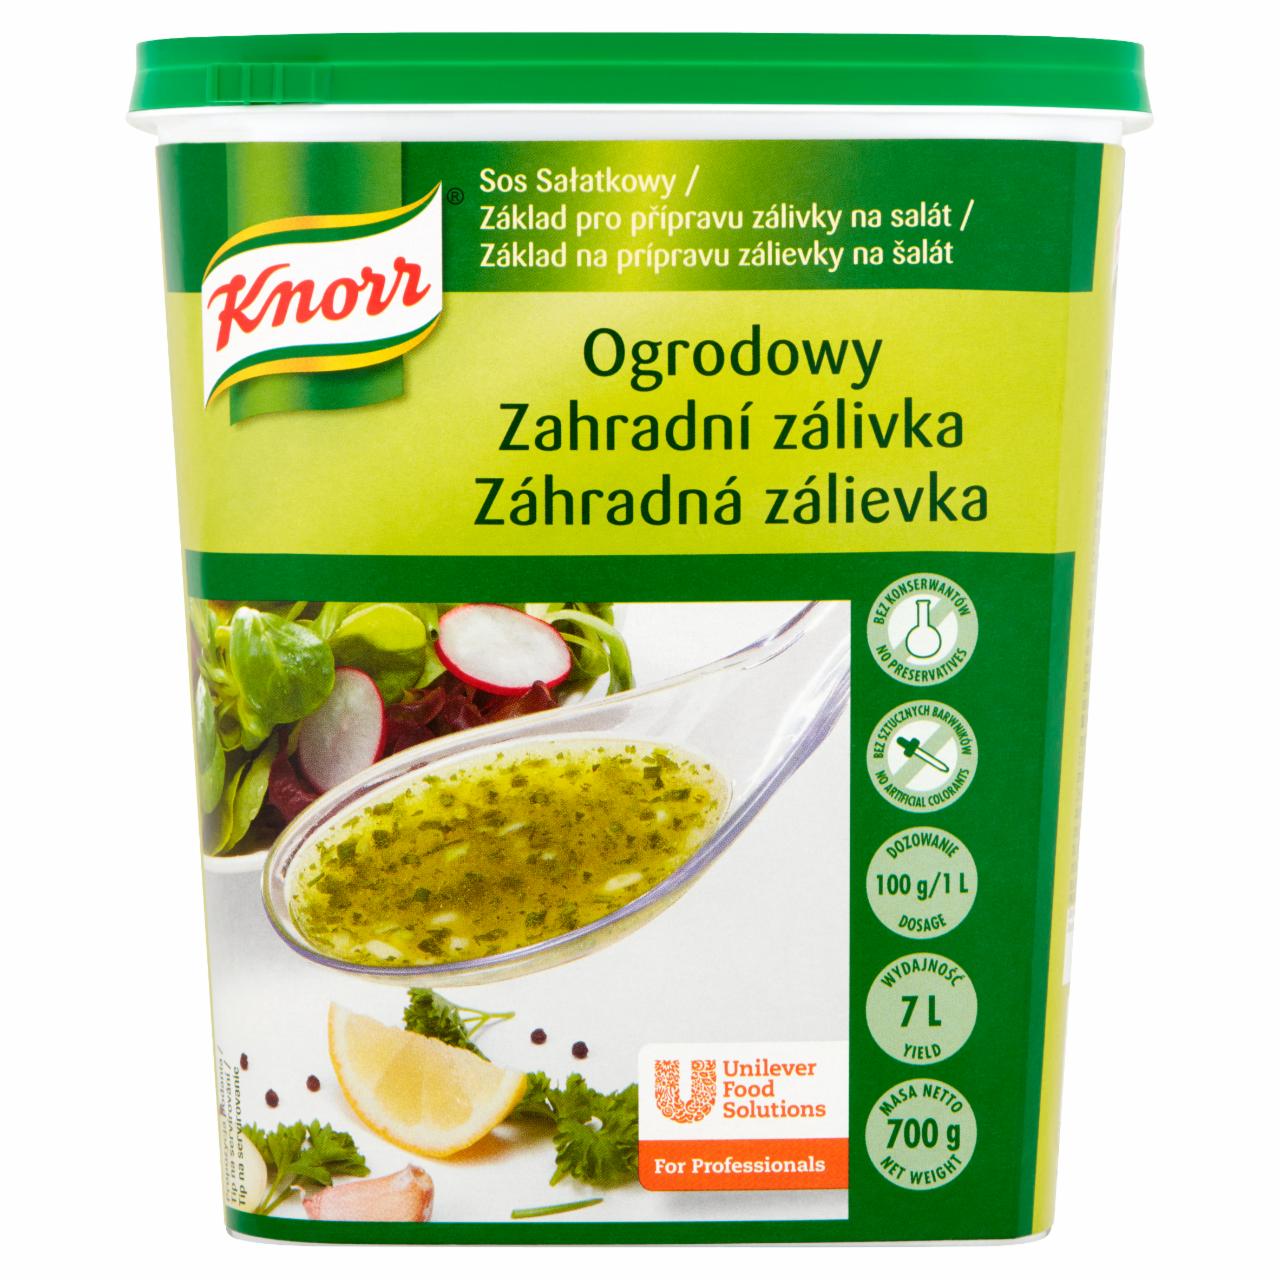 Zdjęcia - Knorr Sos sałatkowy ogrodowy 700 g